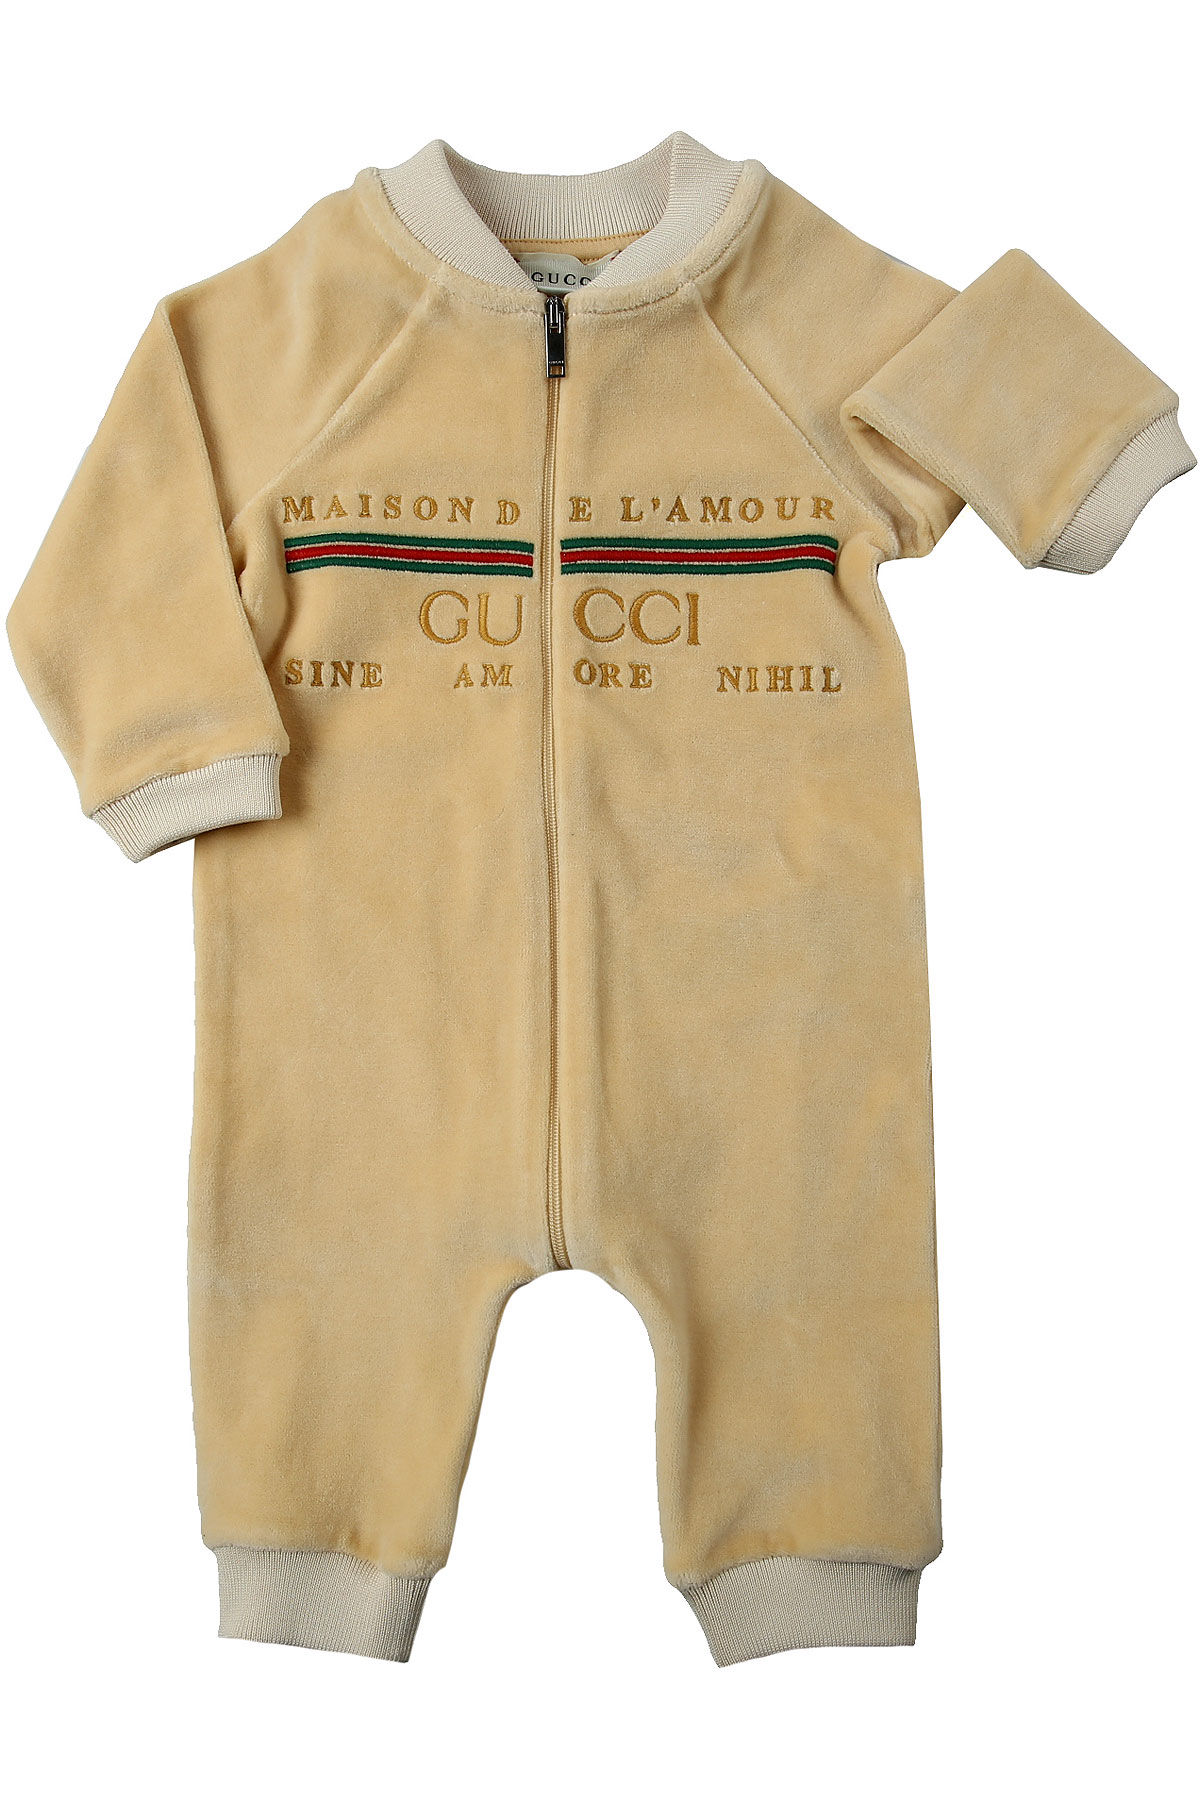 atmosphere Star image Îmbrăcăminte pentru Bebeluși Băieți Gucci, Cod stil: 631034-xjct7-9752